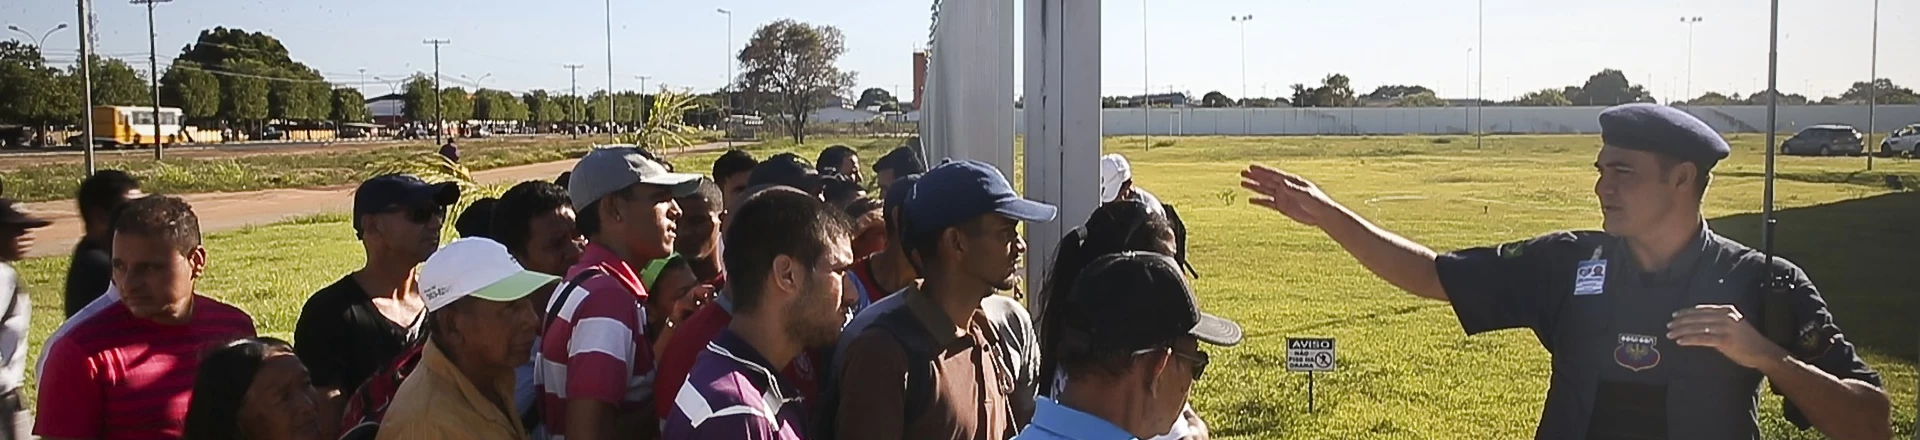 O governo tem uma solução para reduzir a fila de pedidos de refúgio: retirar direitos dos refugiados